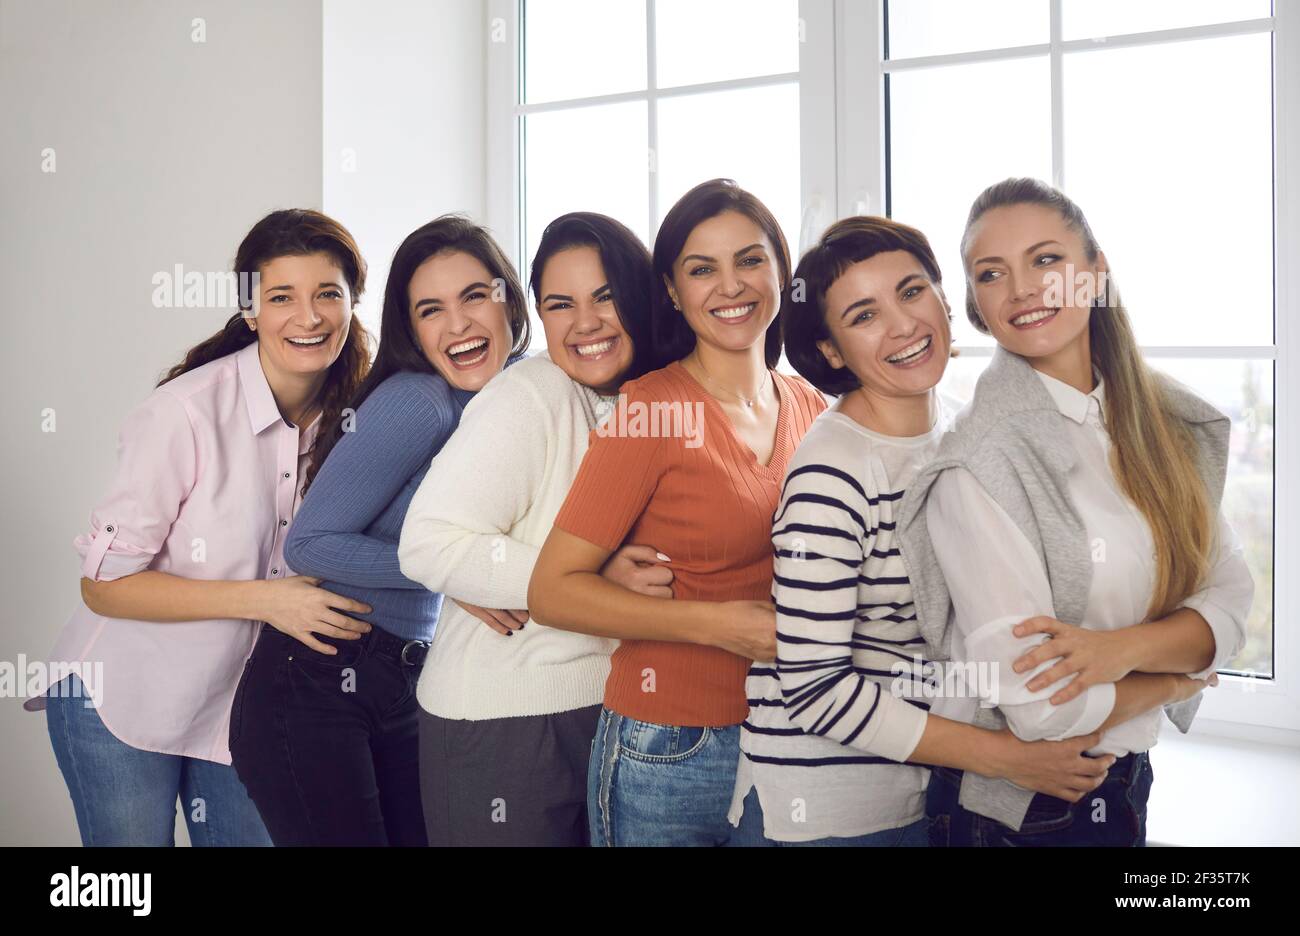 Gruppe von fröhlichen jungen Frauen, die nahe beieinander stehen Und lächelnd auf die Kamera Stockfoto